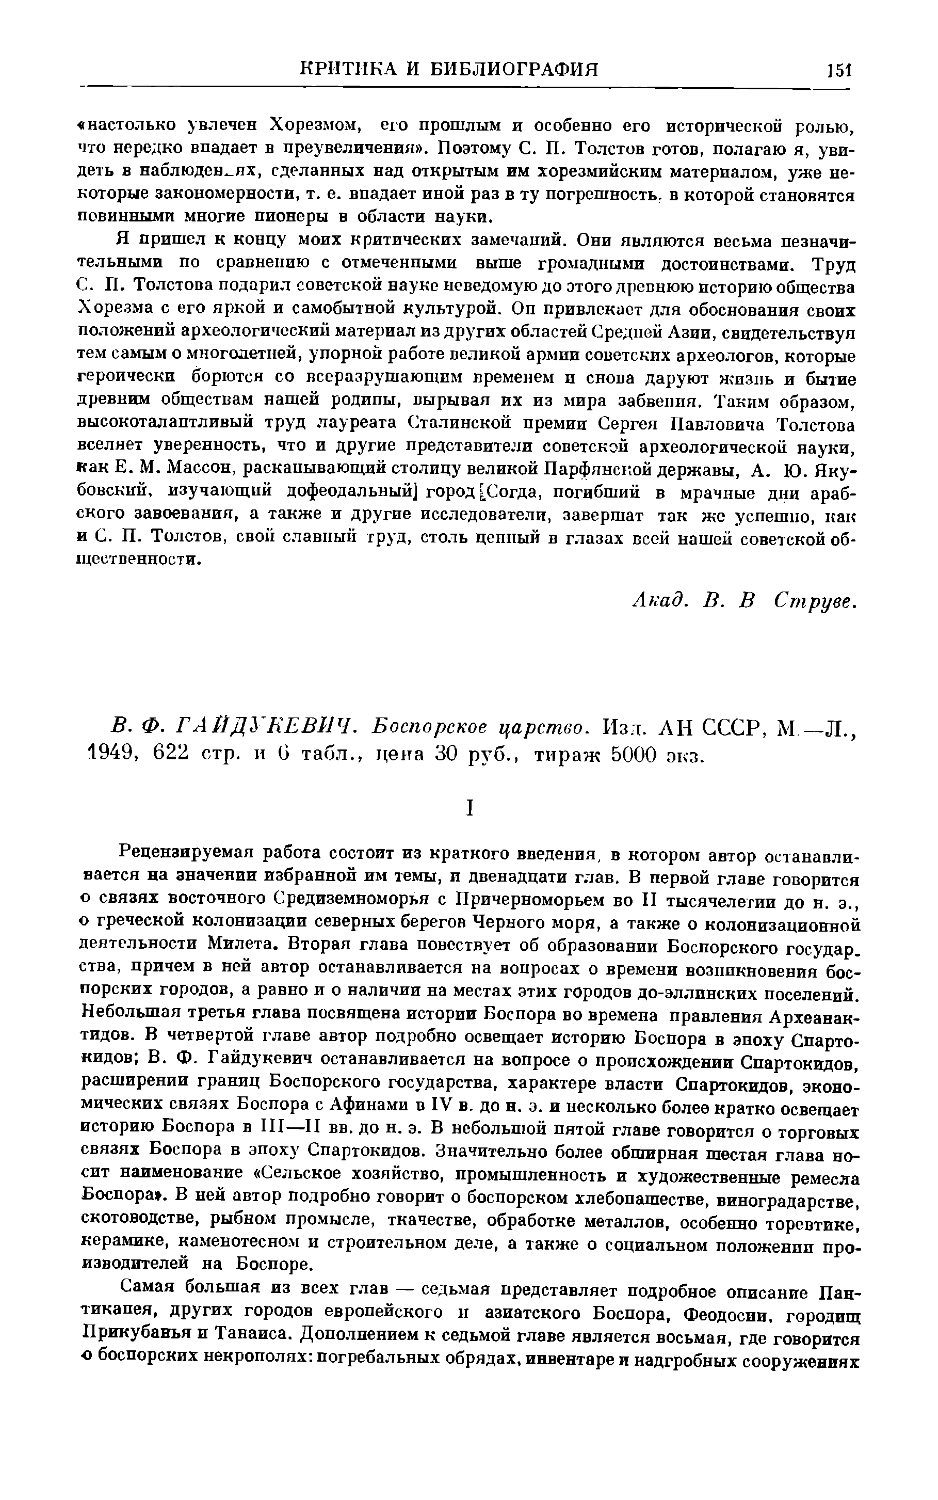 Блаватский В.Д. – В.Ф. Гайдукевич. Боспорское царство. М.–Л., 1949